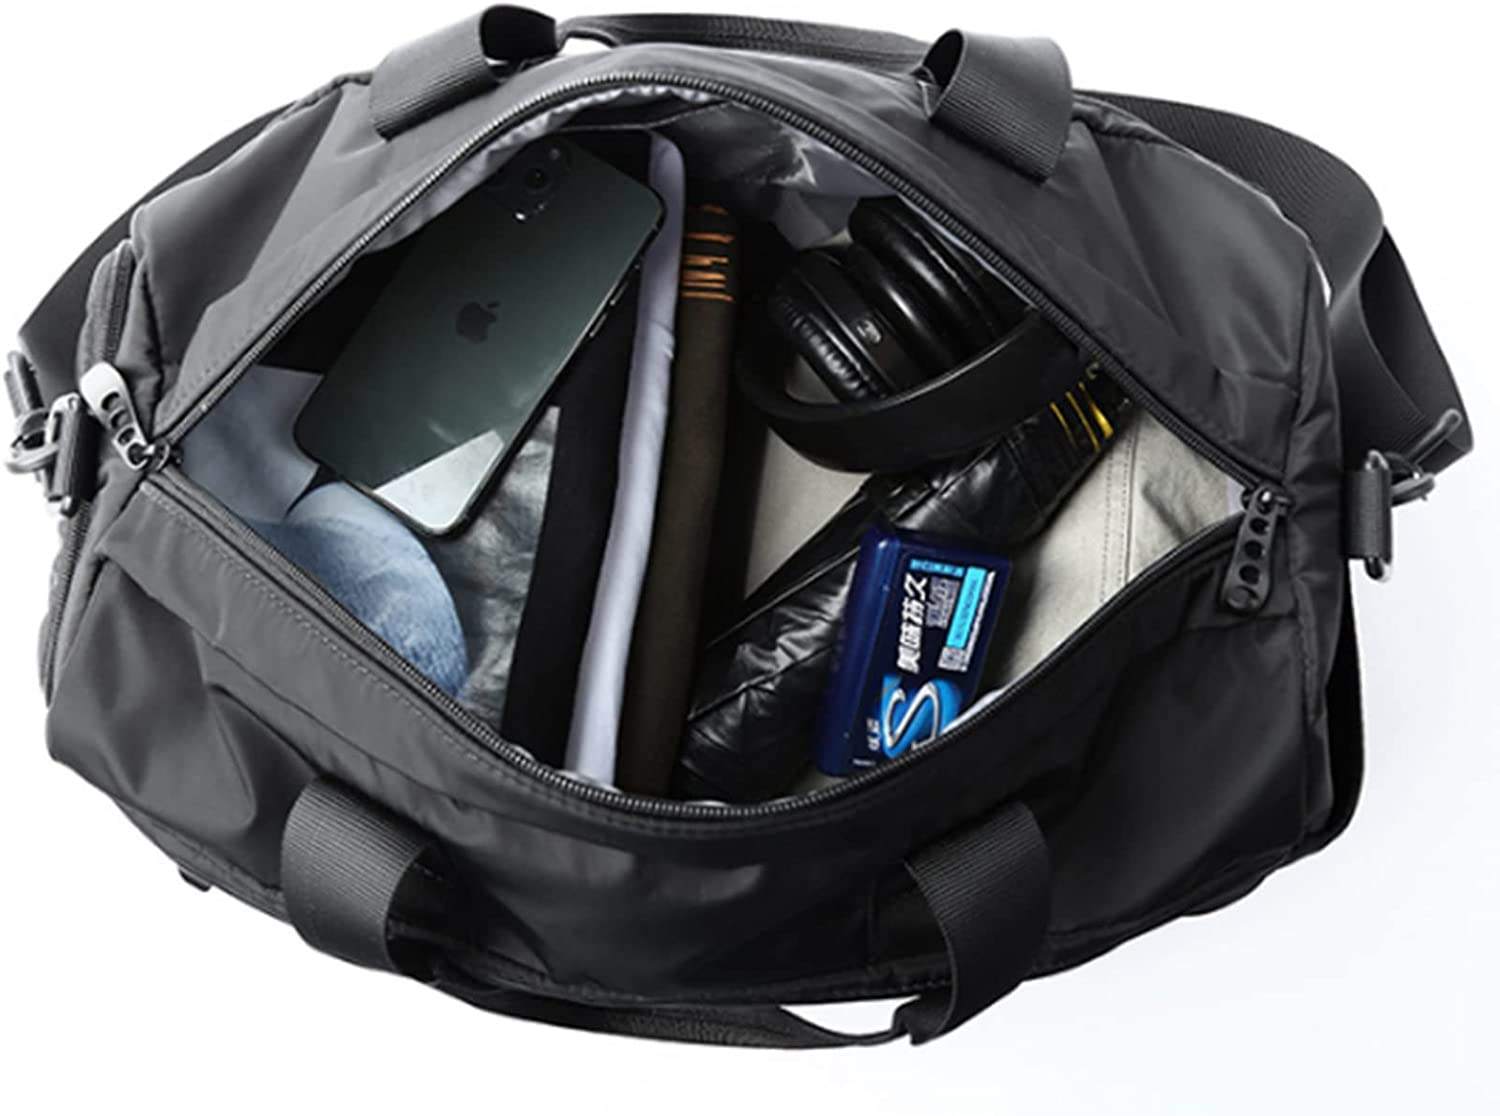 Sporttasche Reisetasche für Damen Herren mit Schuhfach Wasserdichter Weekender Reisetasche für die Nacht